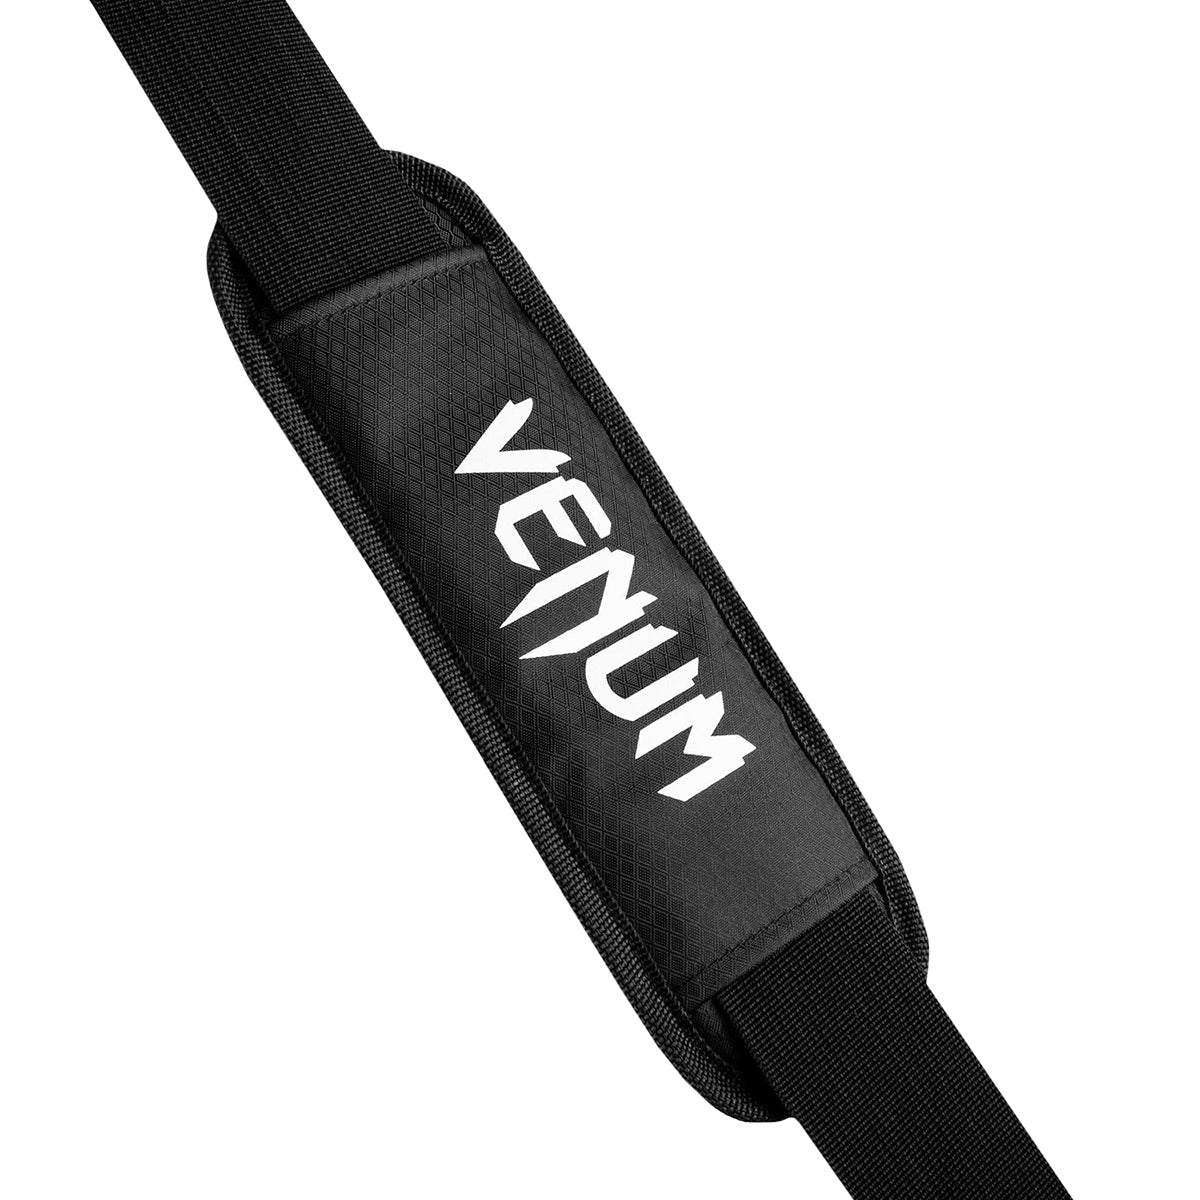 Venum Sparring Sport Bag - Black/White Venum